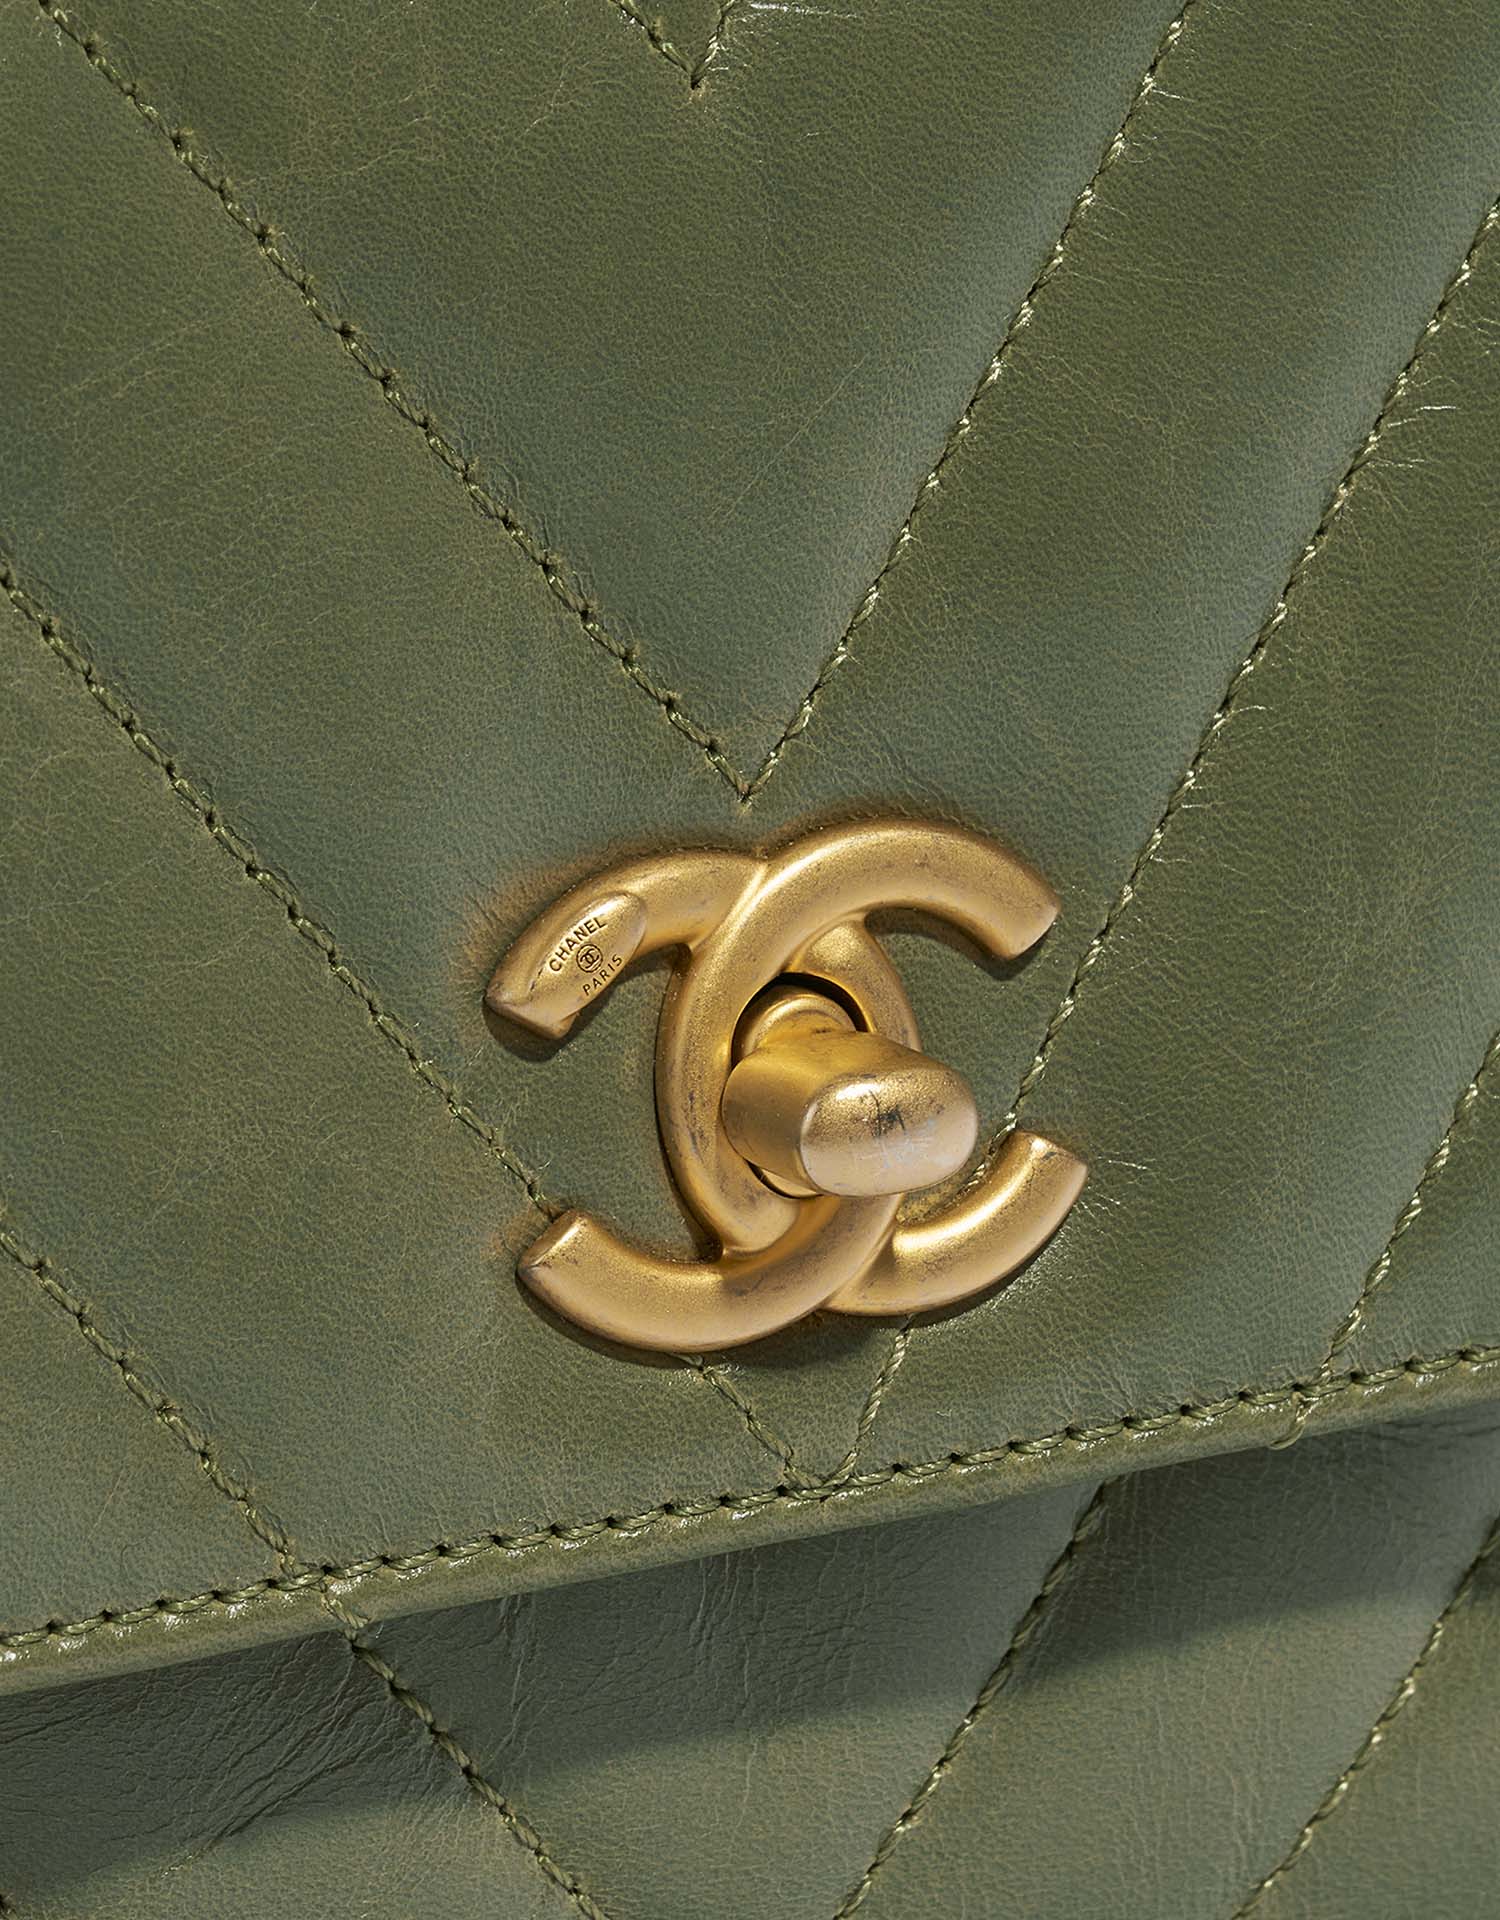 Chanel TimelessHandle Small Green Closing System | Verkaufen Sie Ihre Designer-Tasche auf Saclab.com